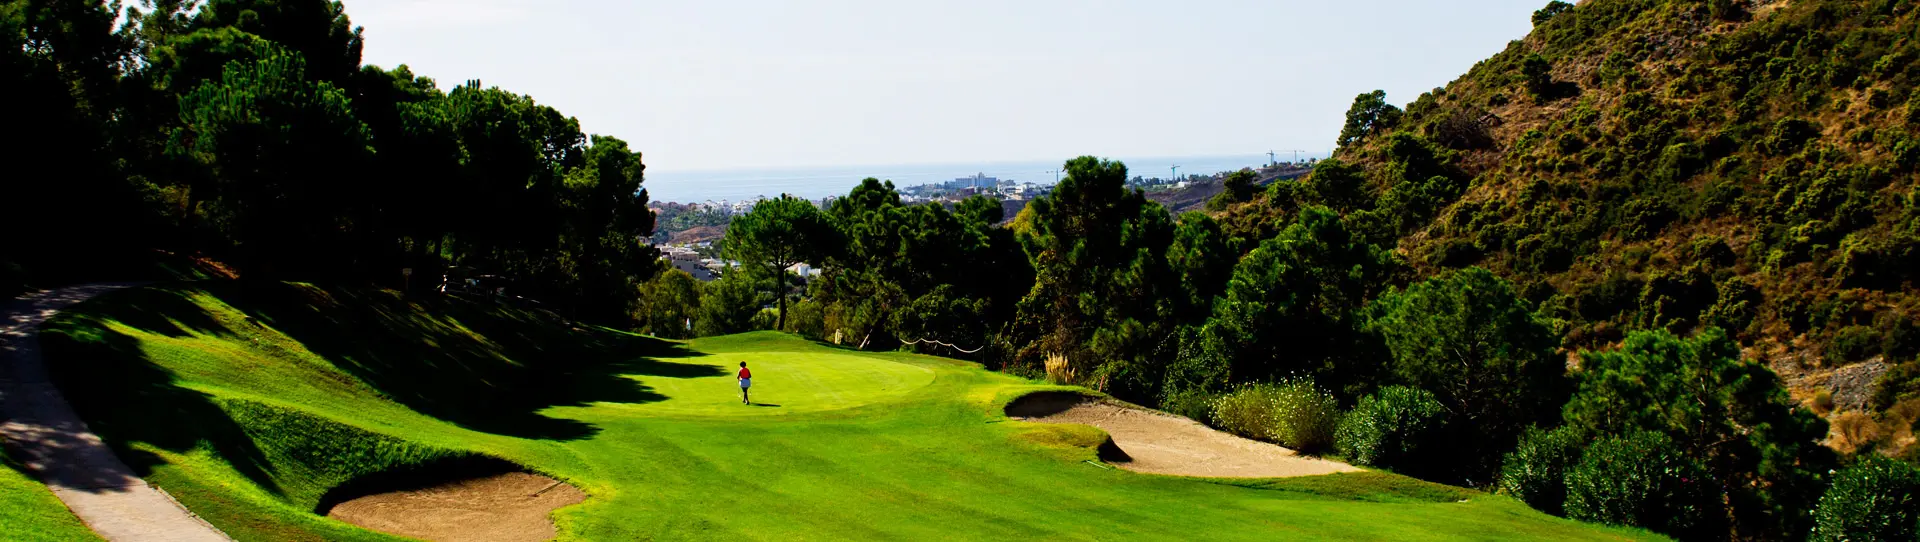 Spain golf courses - Los Arqueros - Photo 1